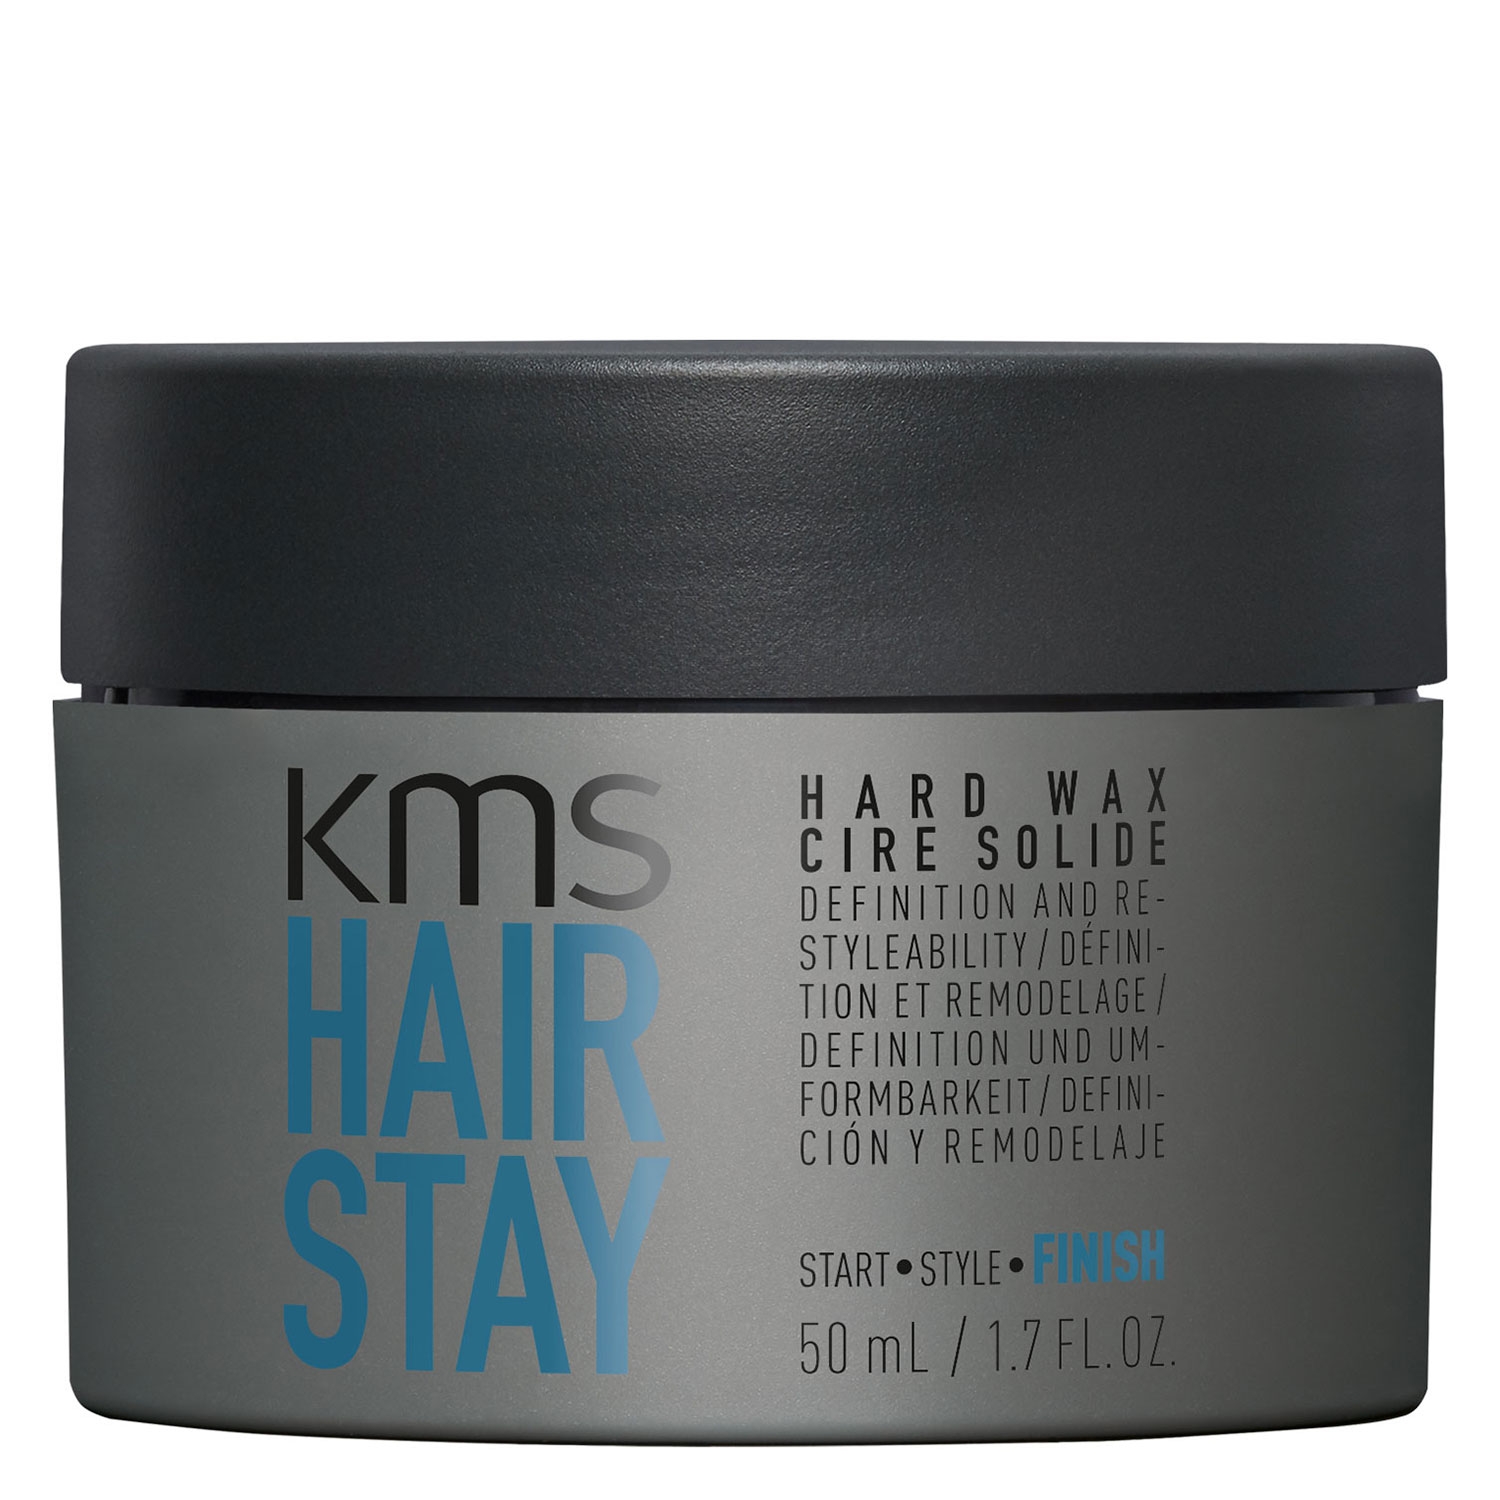 Produktbild von Hairstay - Hard Wax